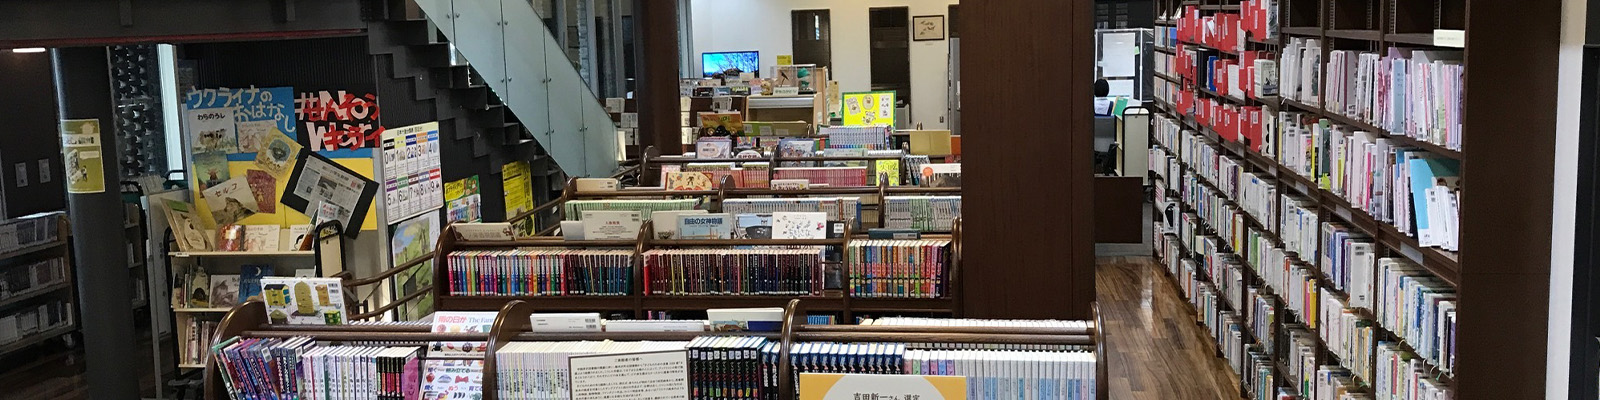 軽井沢町立図書館内の様子2